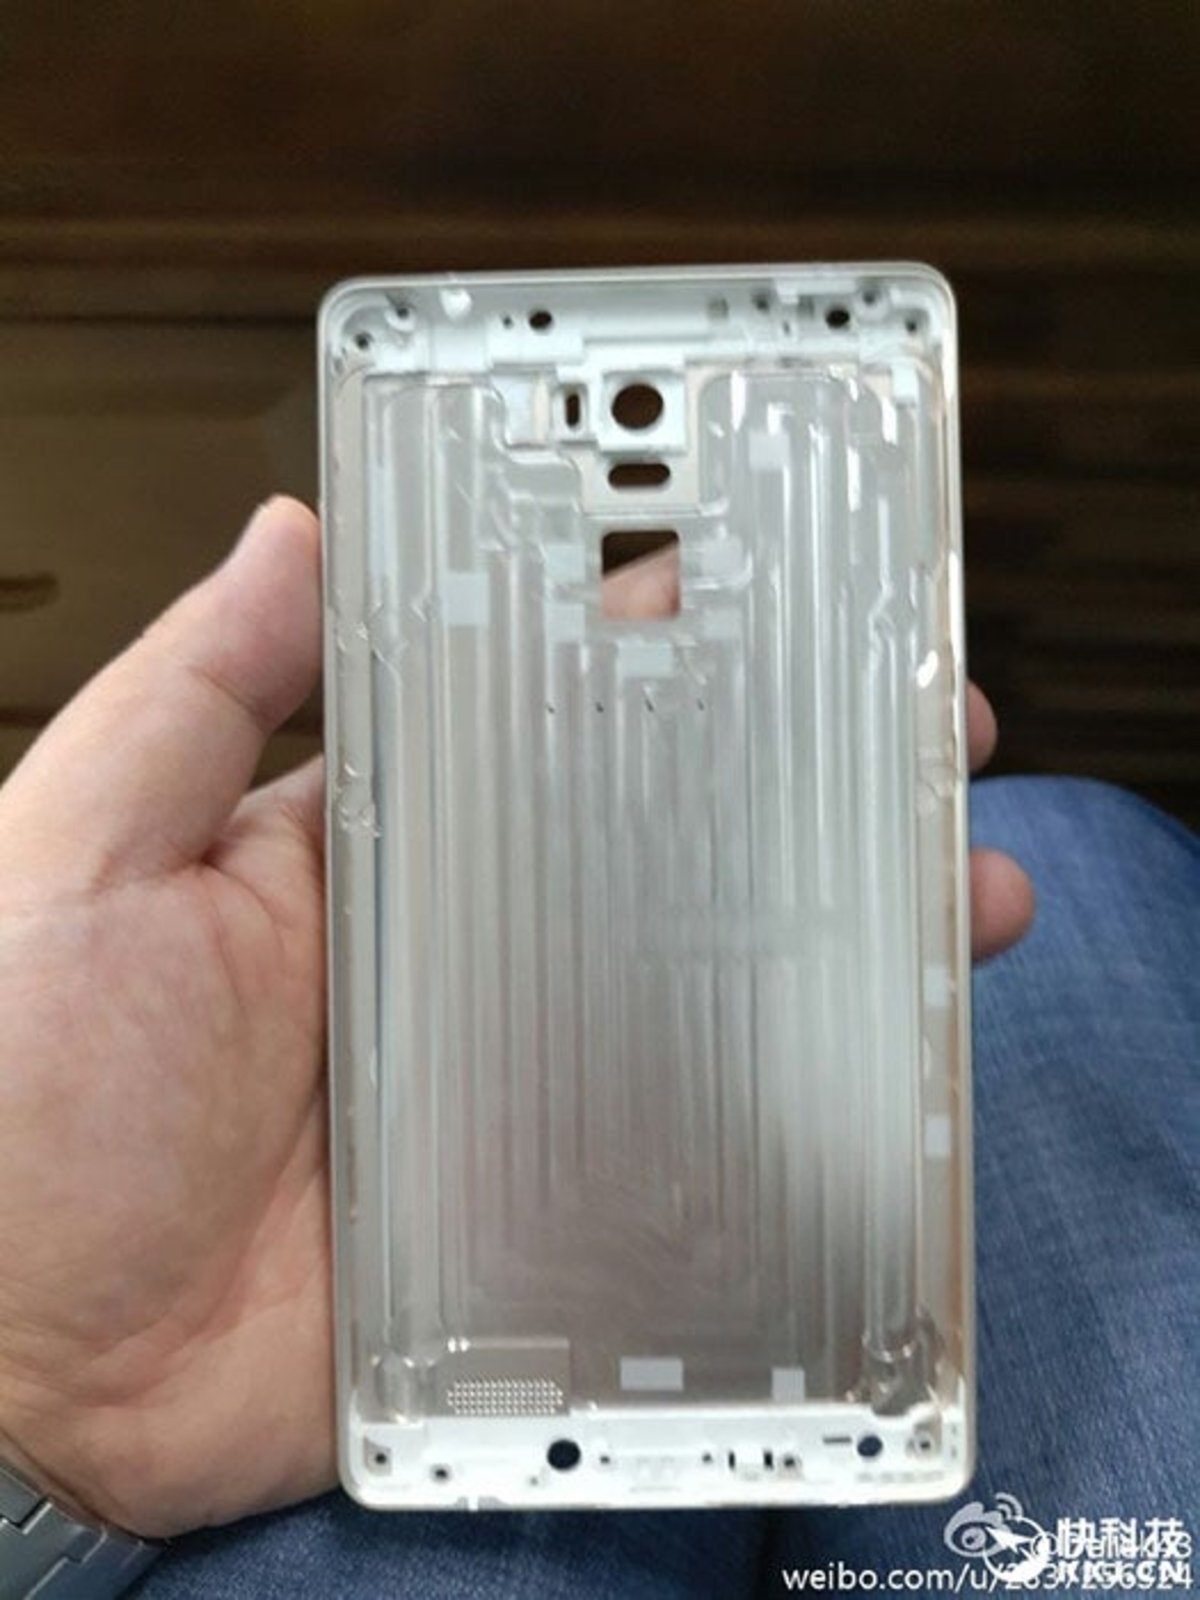 Se filtra el diseño final de la parte trasera del Xiaomi Redmi Note 2